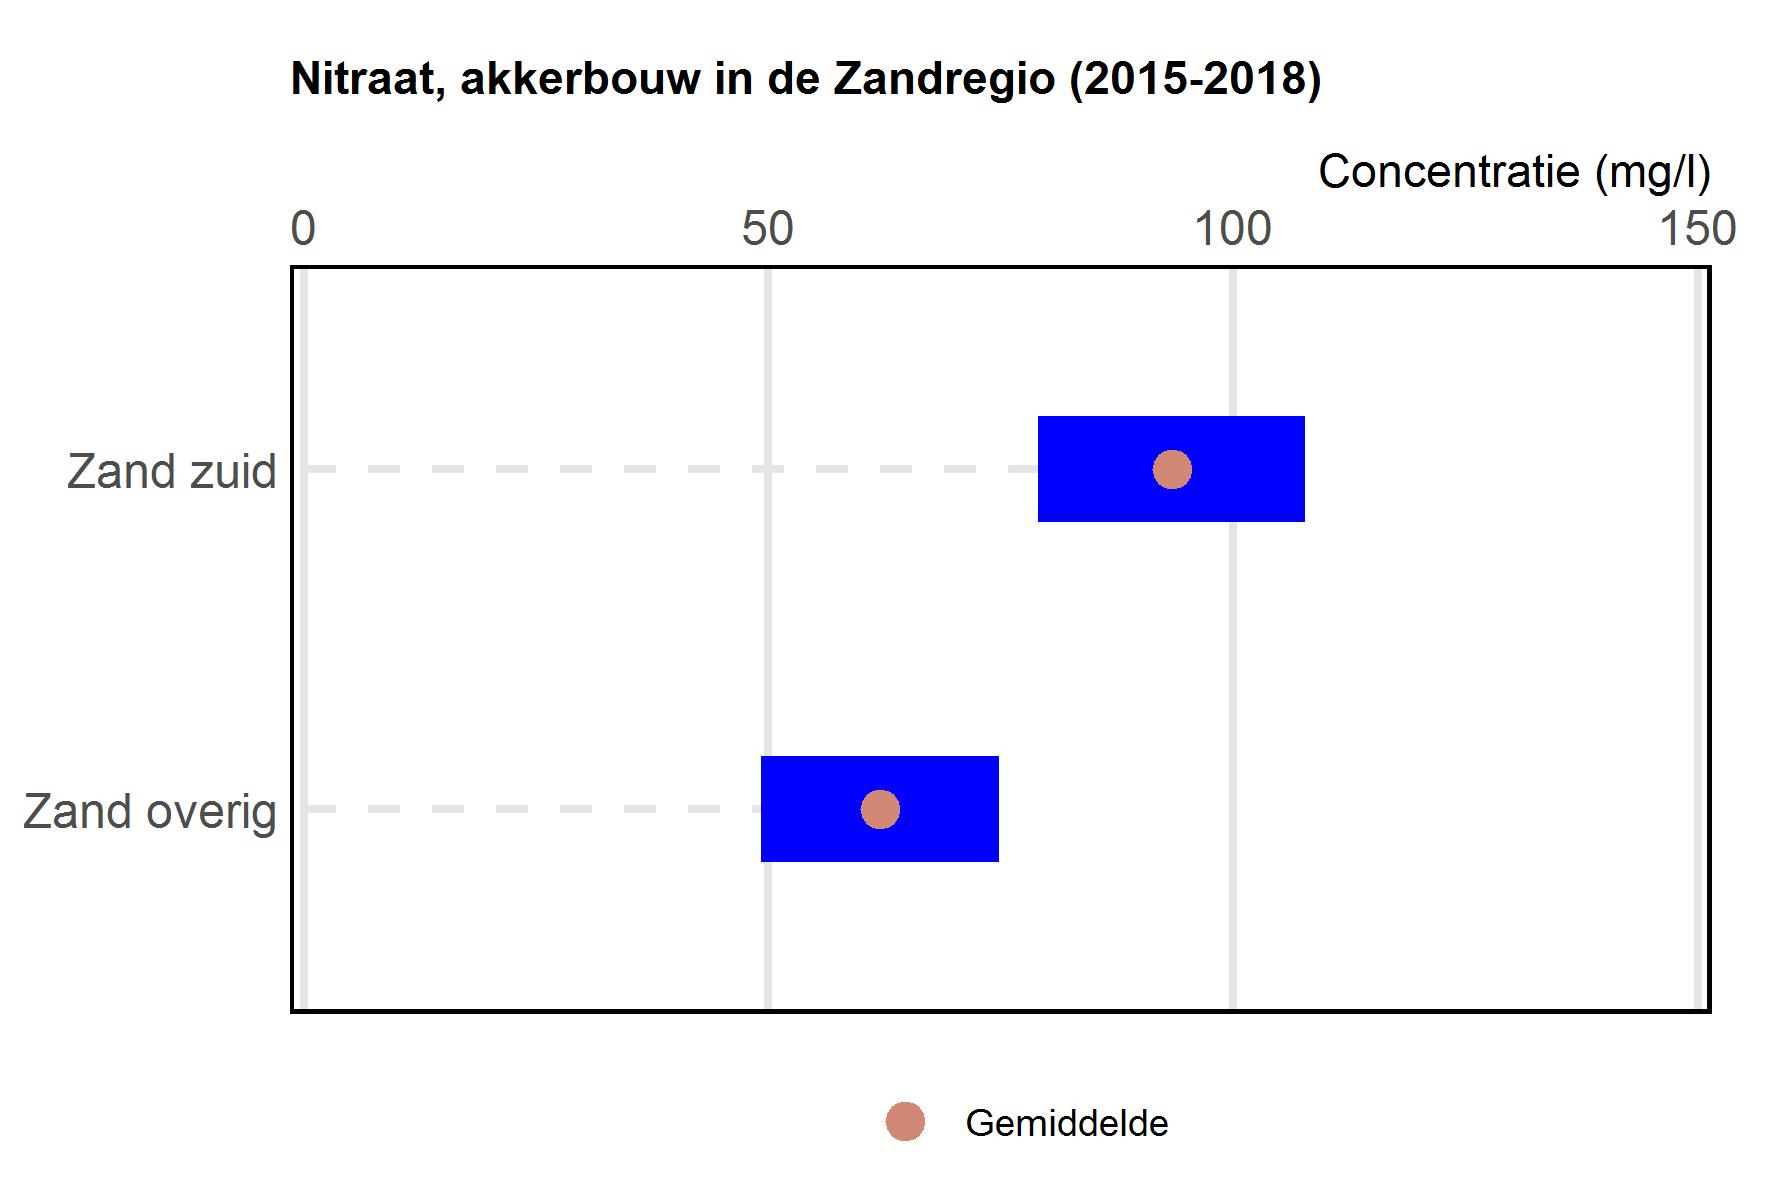 Figuur met gemiddelde nitraatconcentraties op akkerbouwbedrijven in Zandregio voor Zand zuid en overige zand.